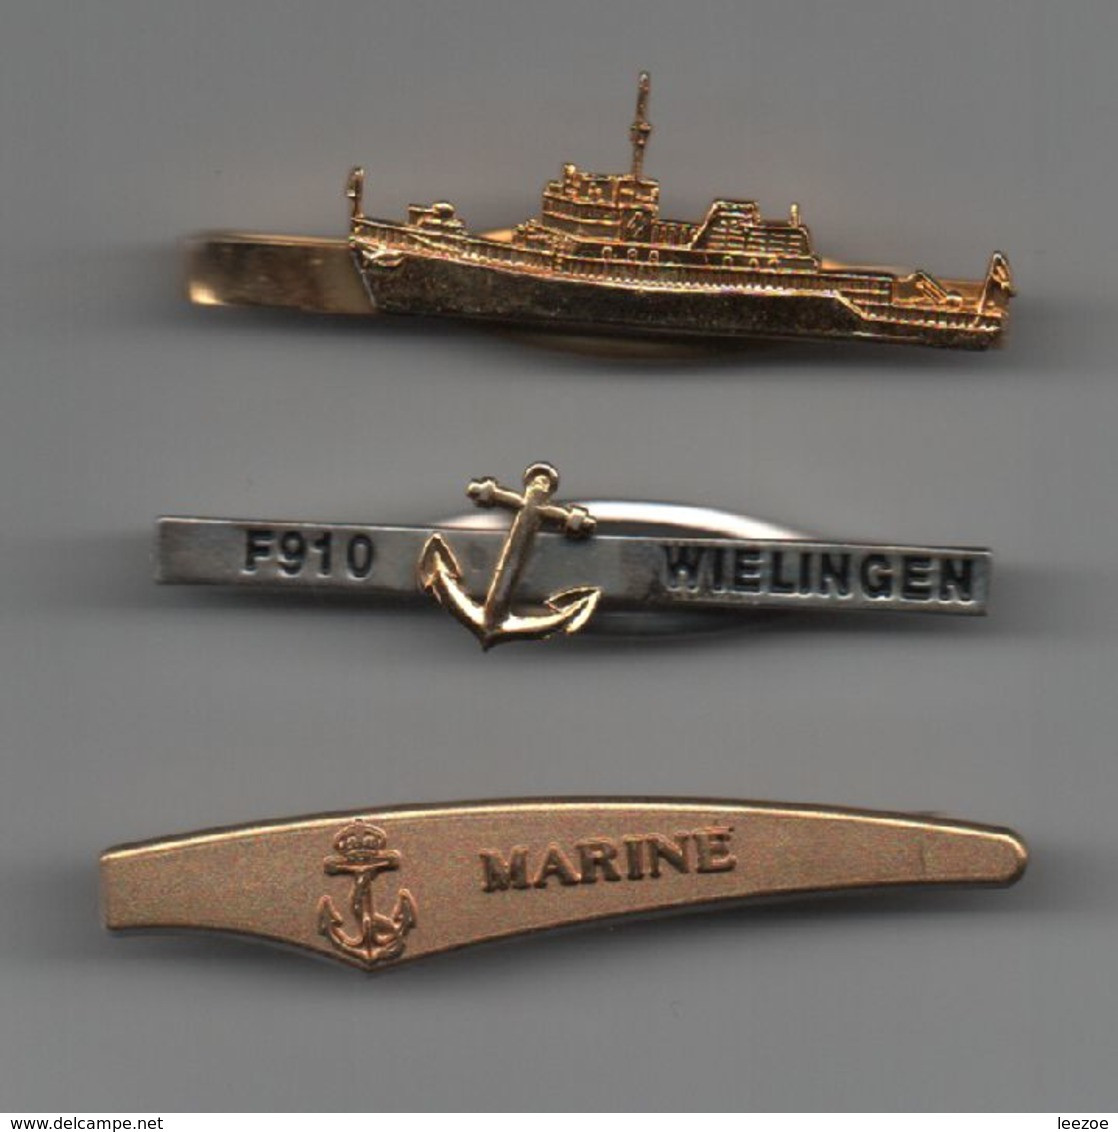 MARINE Pinces à Cravattes Marine F910 WIELINGEN, Bateaux, Navires....BT15 - Maritime Dekoration